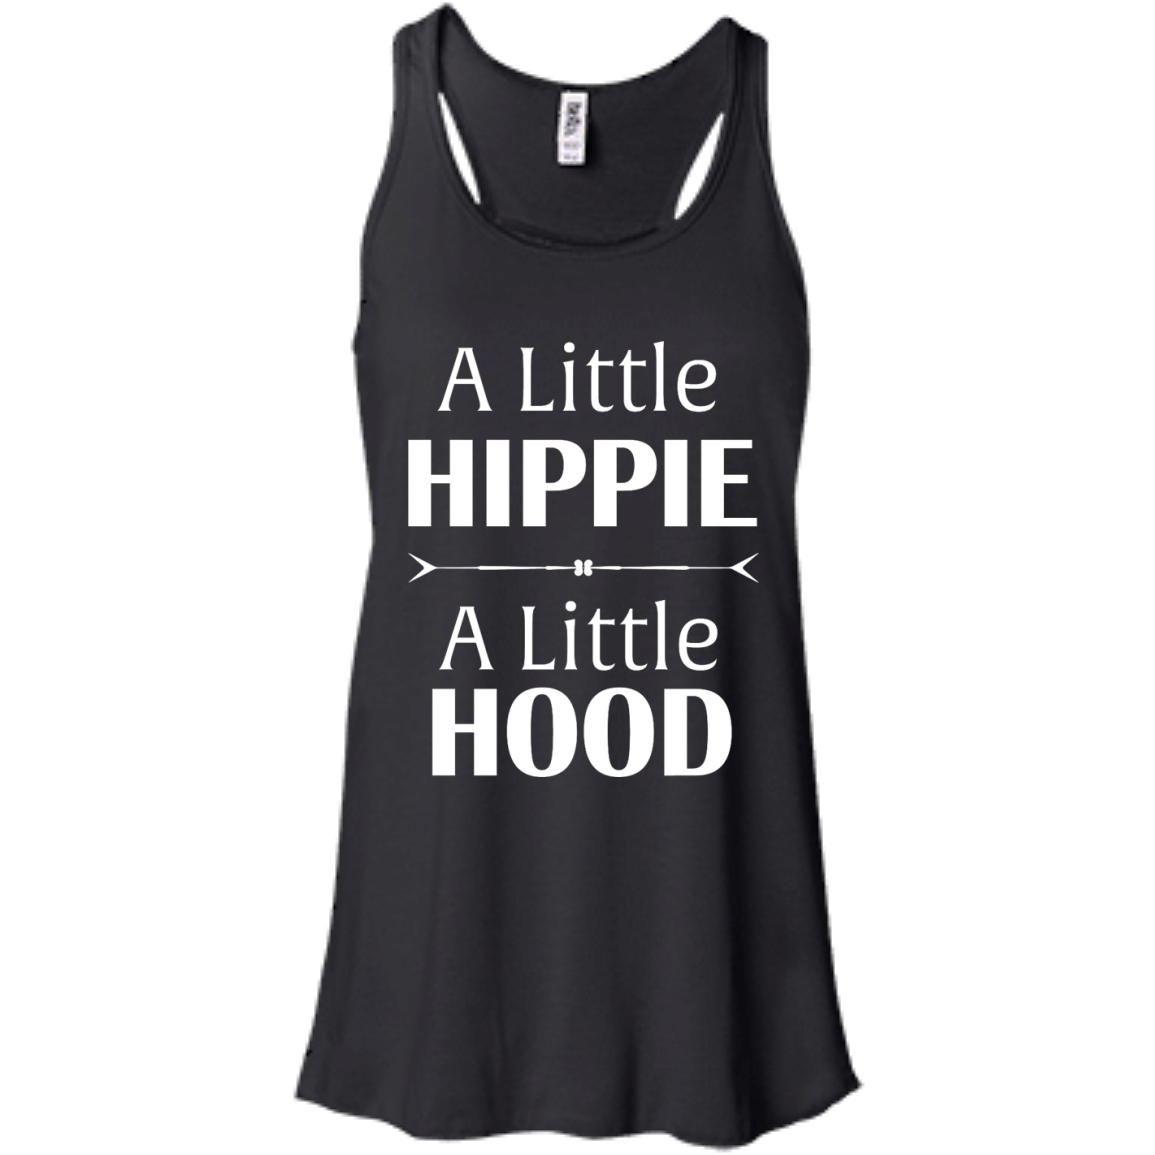 A Little Hippie A Little Hood shirt, sweater, tank